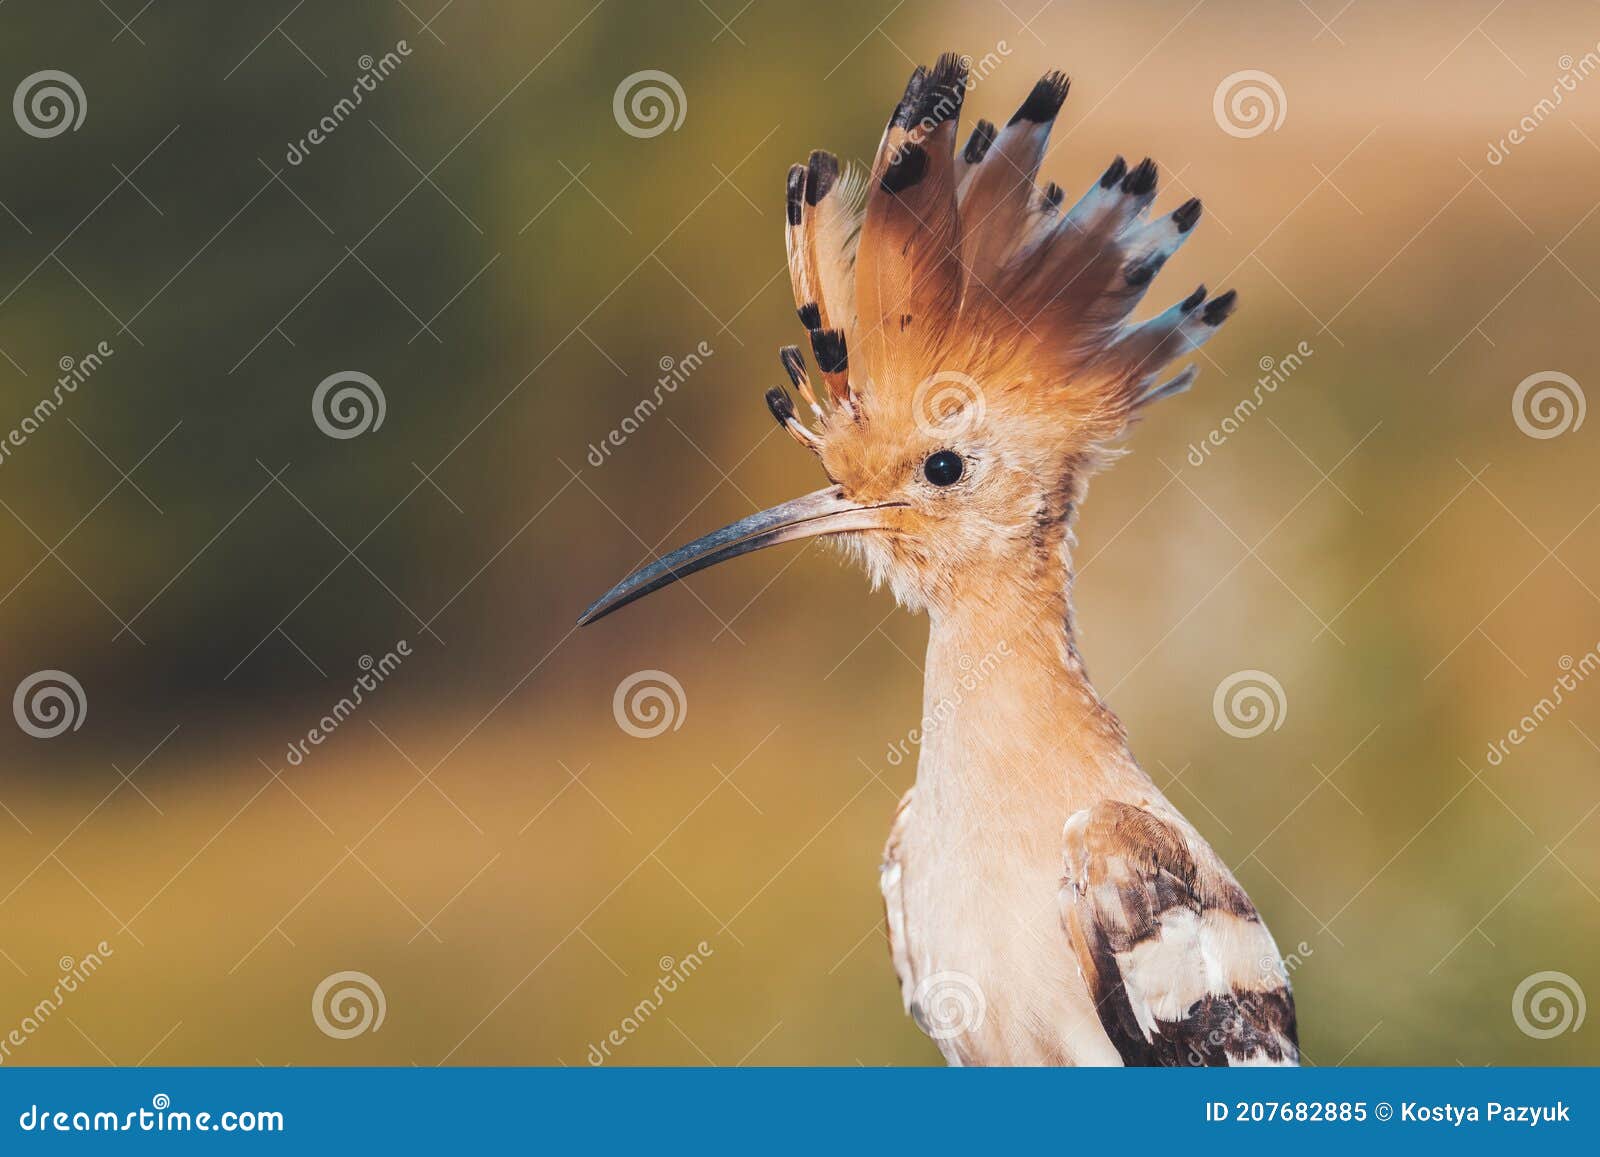 Vogel Met Een Kroon Op Het Hoofd Stock Afbeelding - Image Of Migratie,  Azië: 207682885